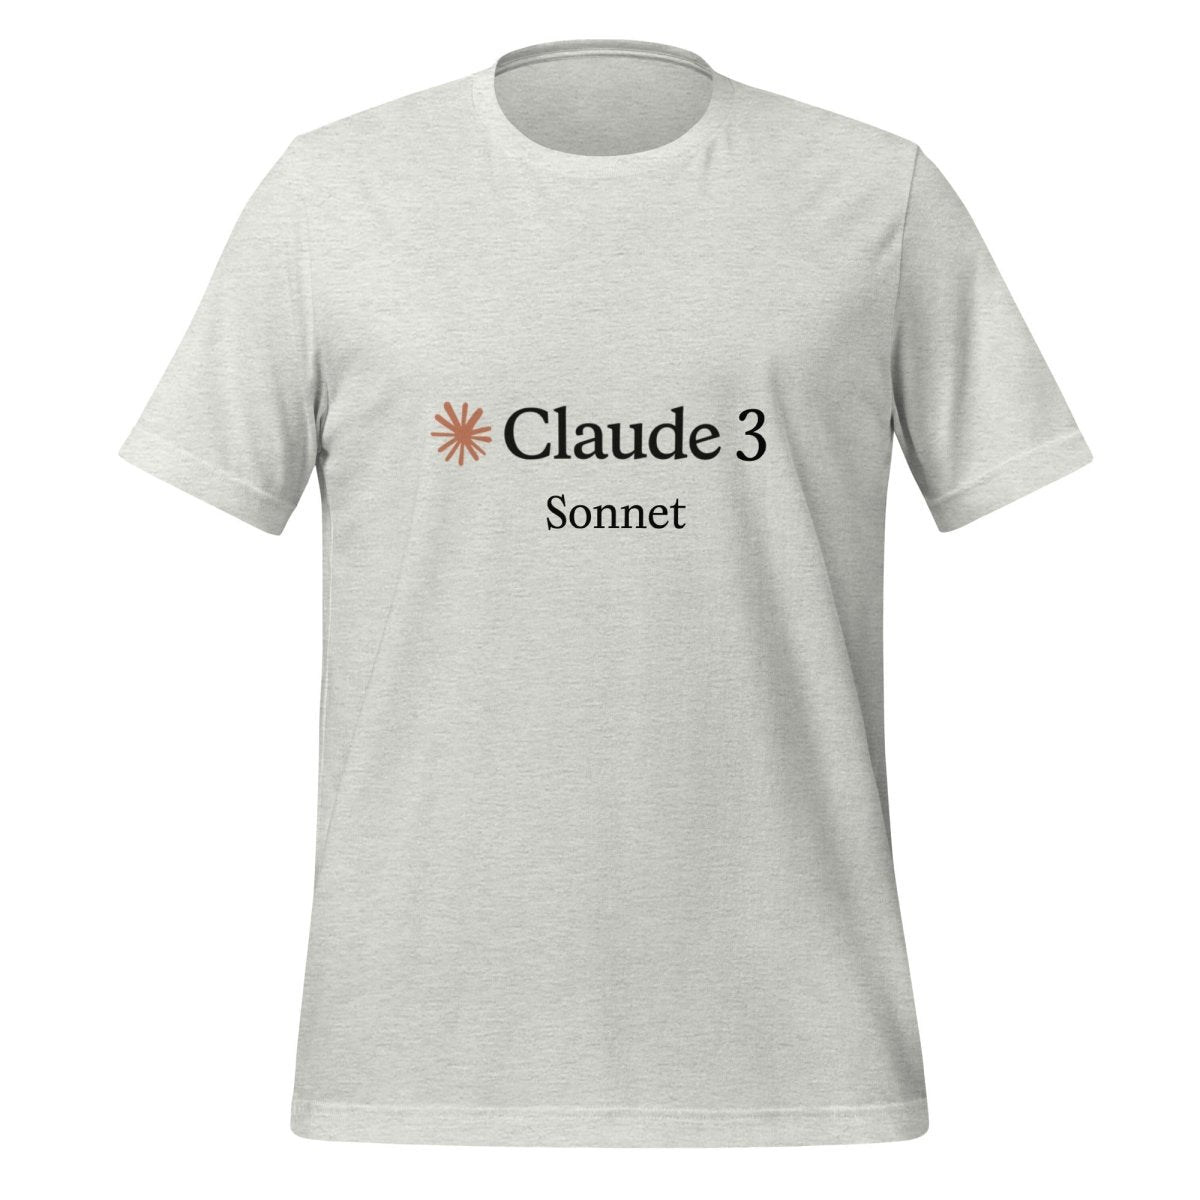 Claude 3 Sonnet T - Shirt (unisex) - Ash - AI Store